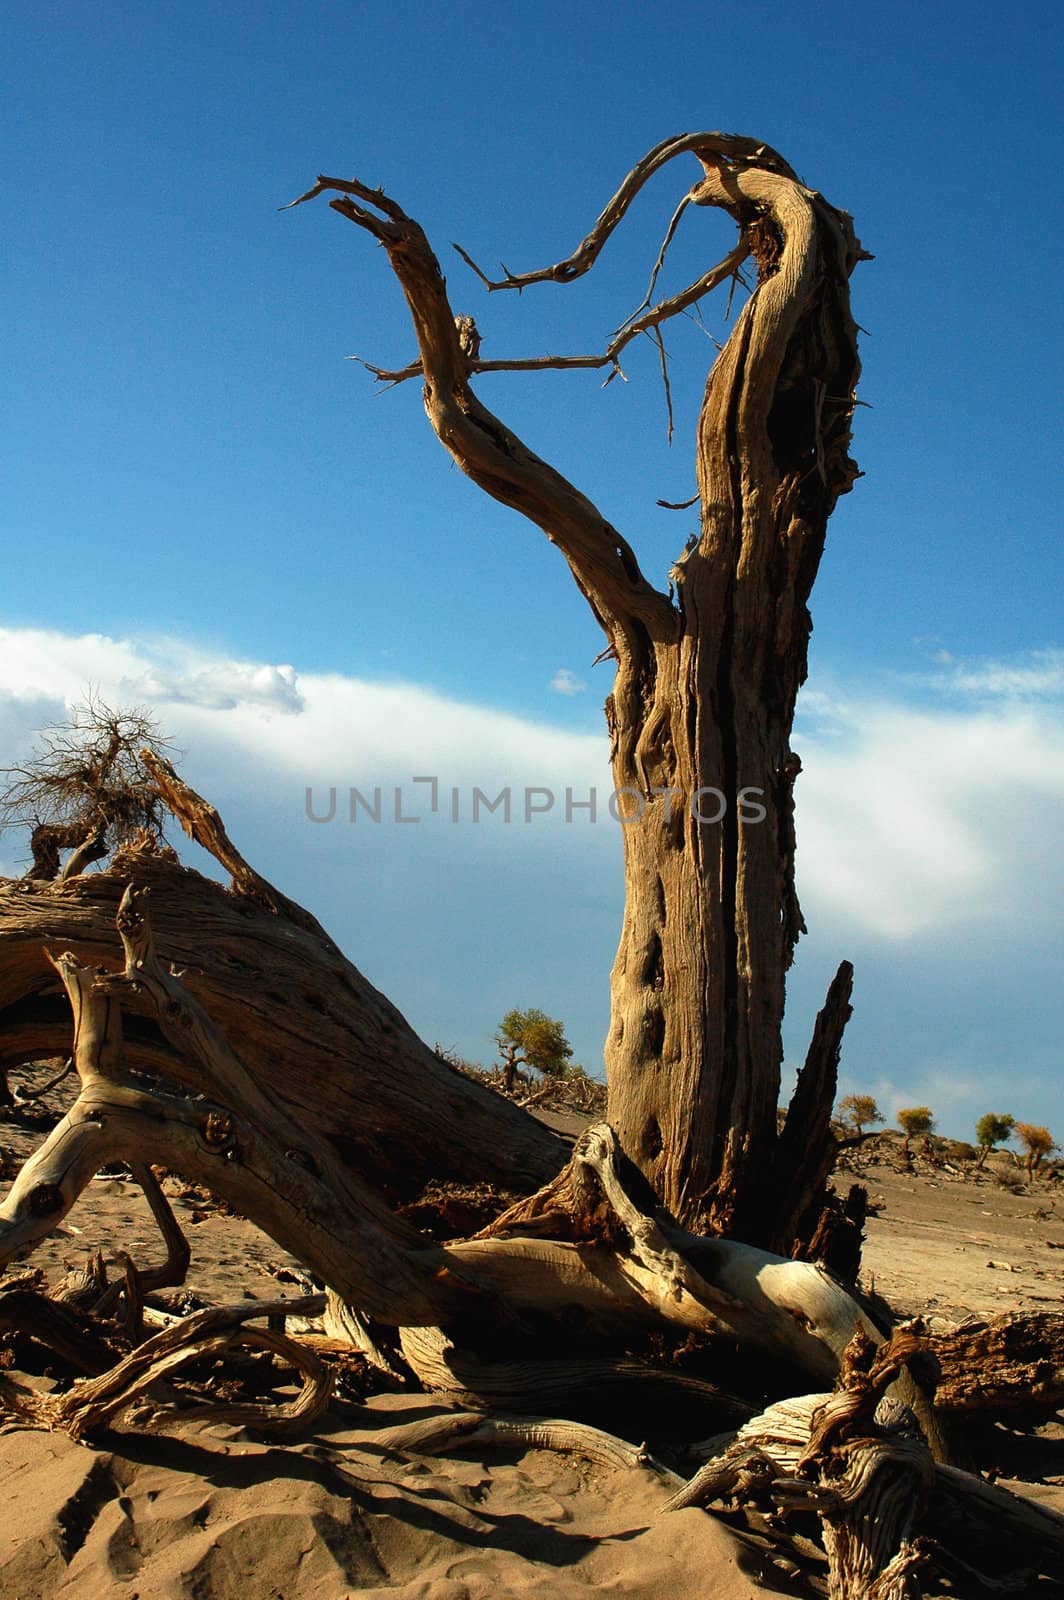 Landscape of dead tree trunks in the desert